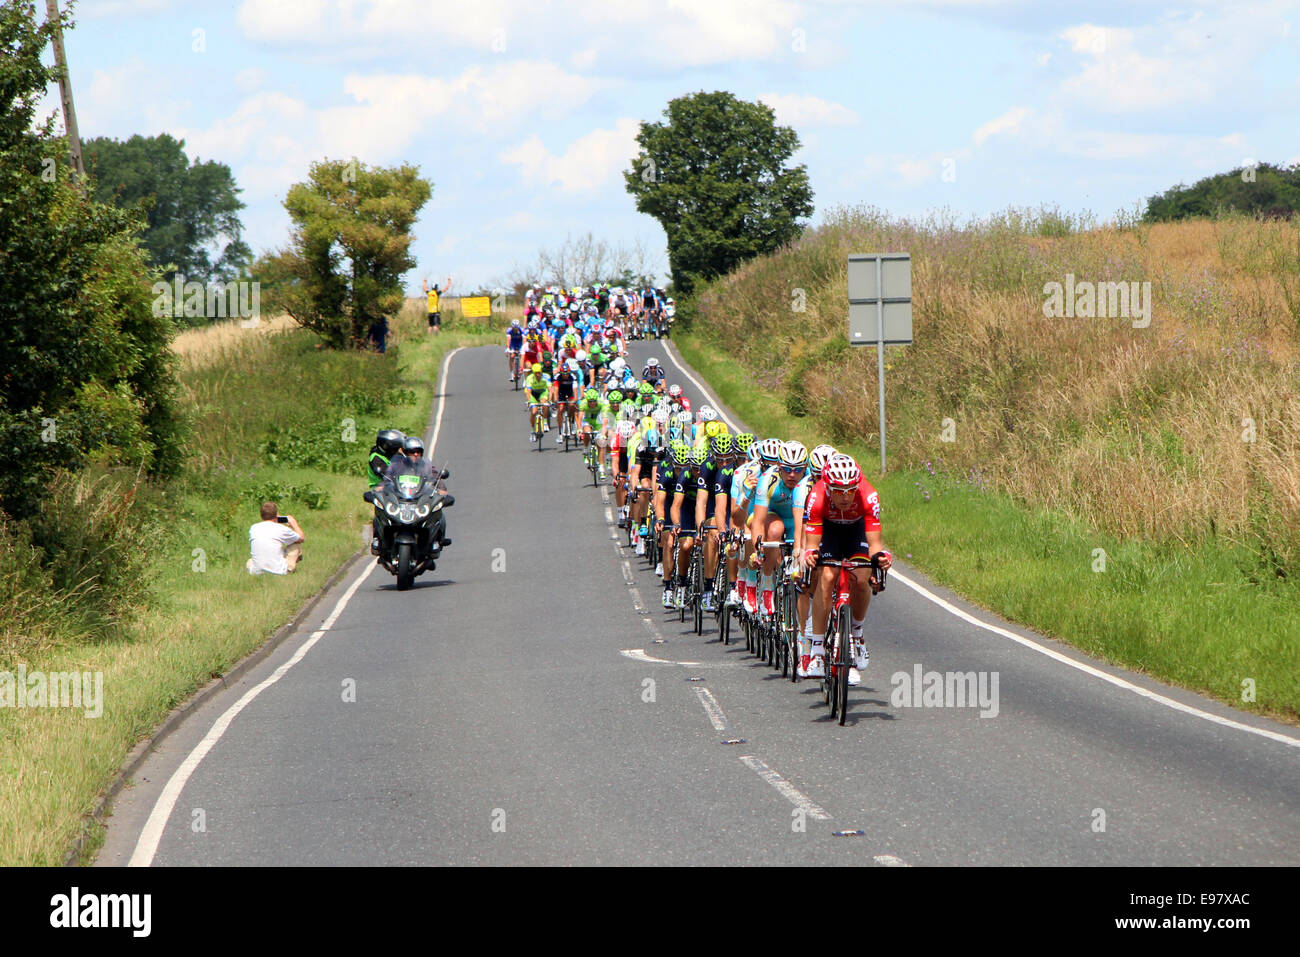 Tour de France 2014 Fase 3, Cambridge, Londres. El pelotón, liderado por Lars Bak, se dirige hacia la ciudad de Saffron Walden. Foto de stock